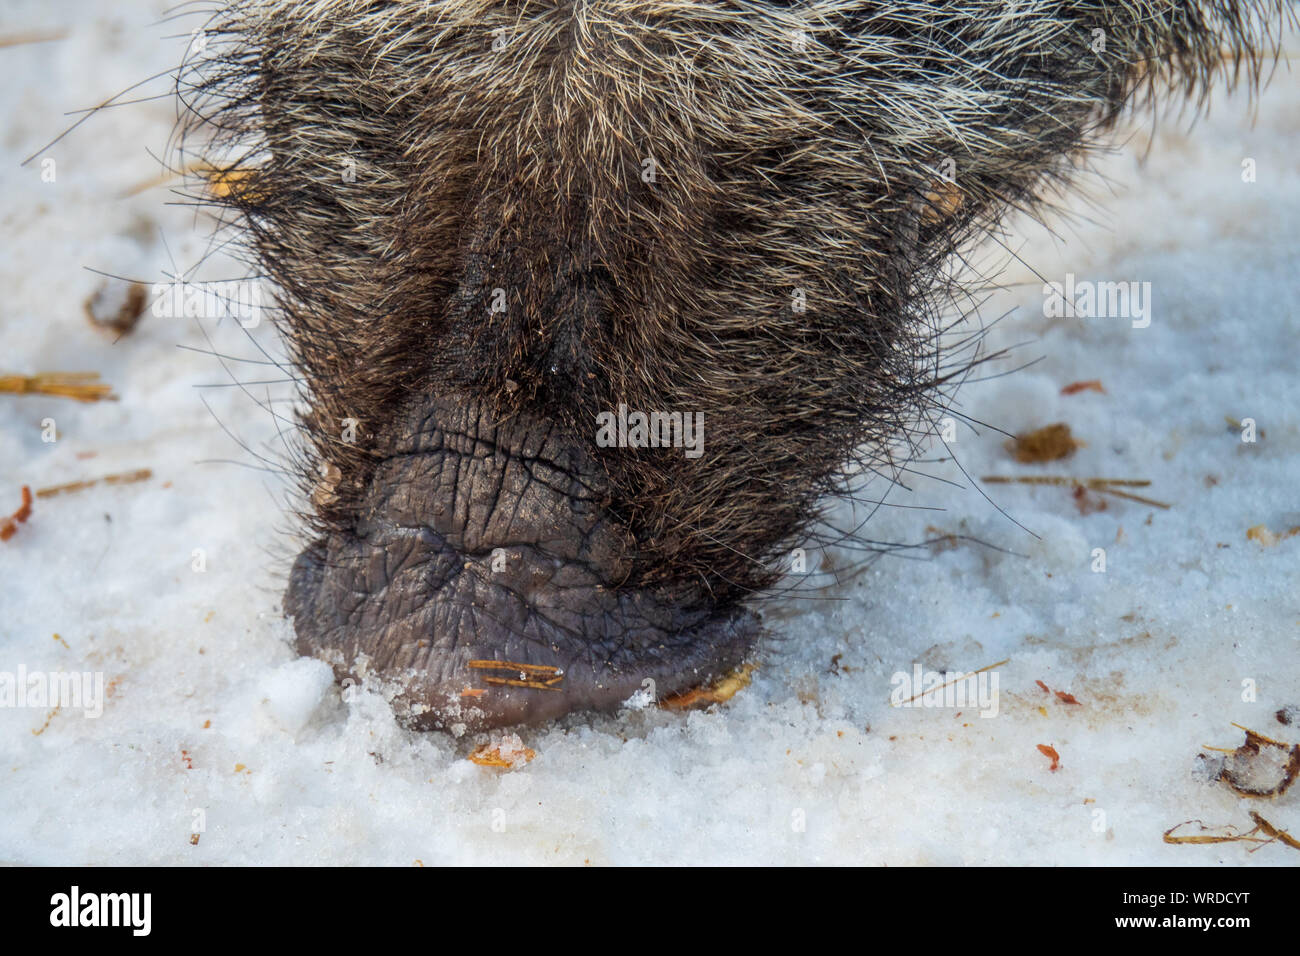 Vista ravvicinata del muso di un maschio di cinghiale alla ricerca di cibo sotto la neve nella regione alpina entro le Alpi austriache, Austria Foto Stock